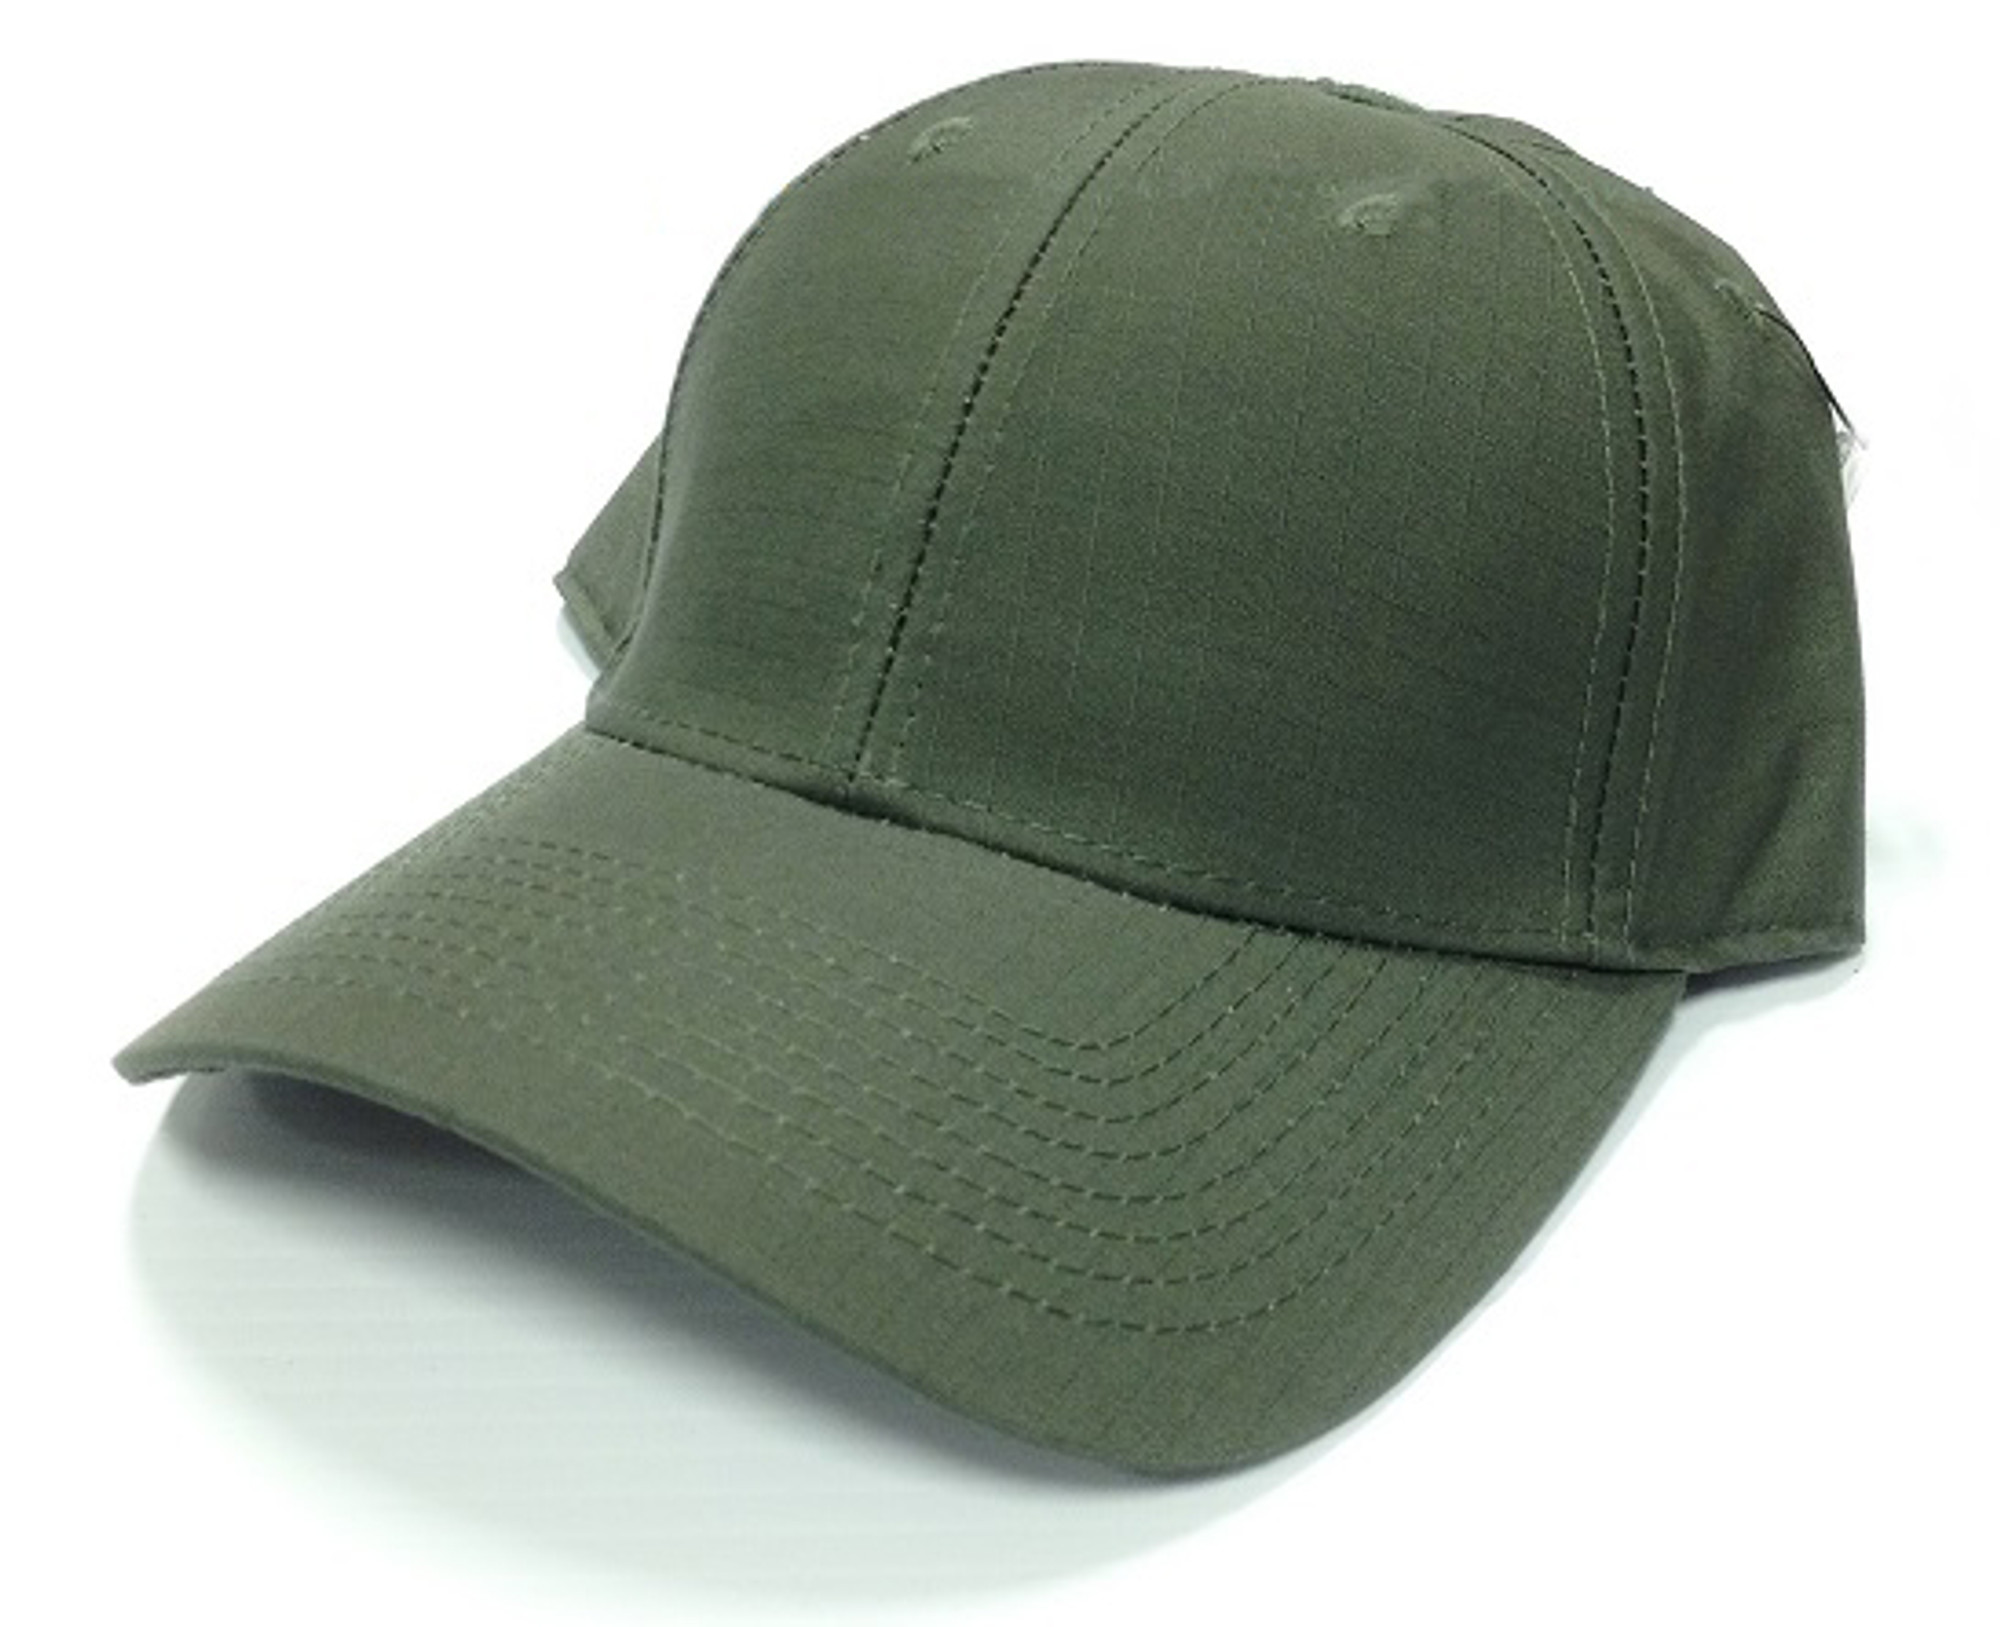 5.11 Taclite Uniform Cap - TDU Green